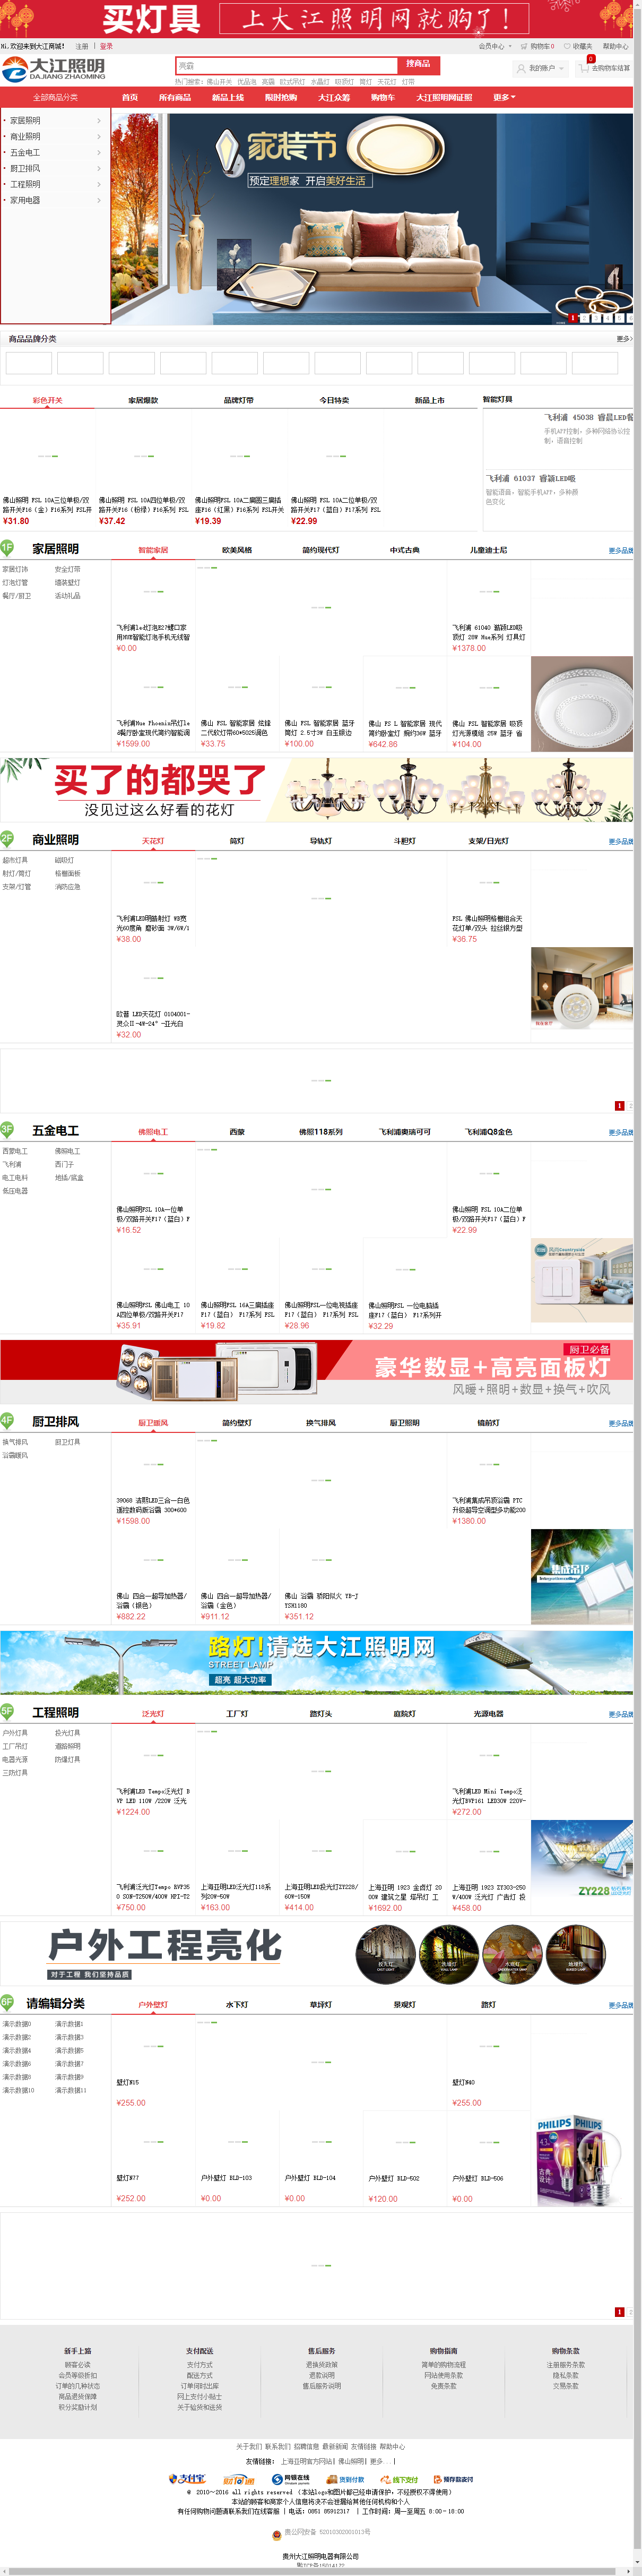 贵州大江照明电器有限公司网站案例